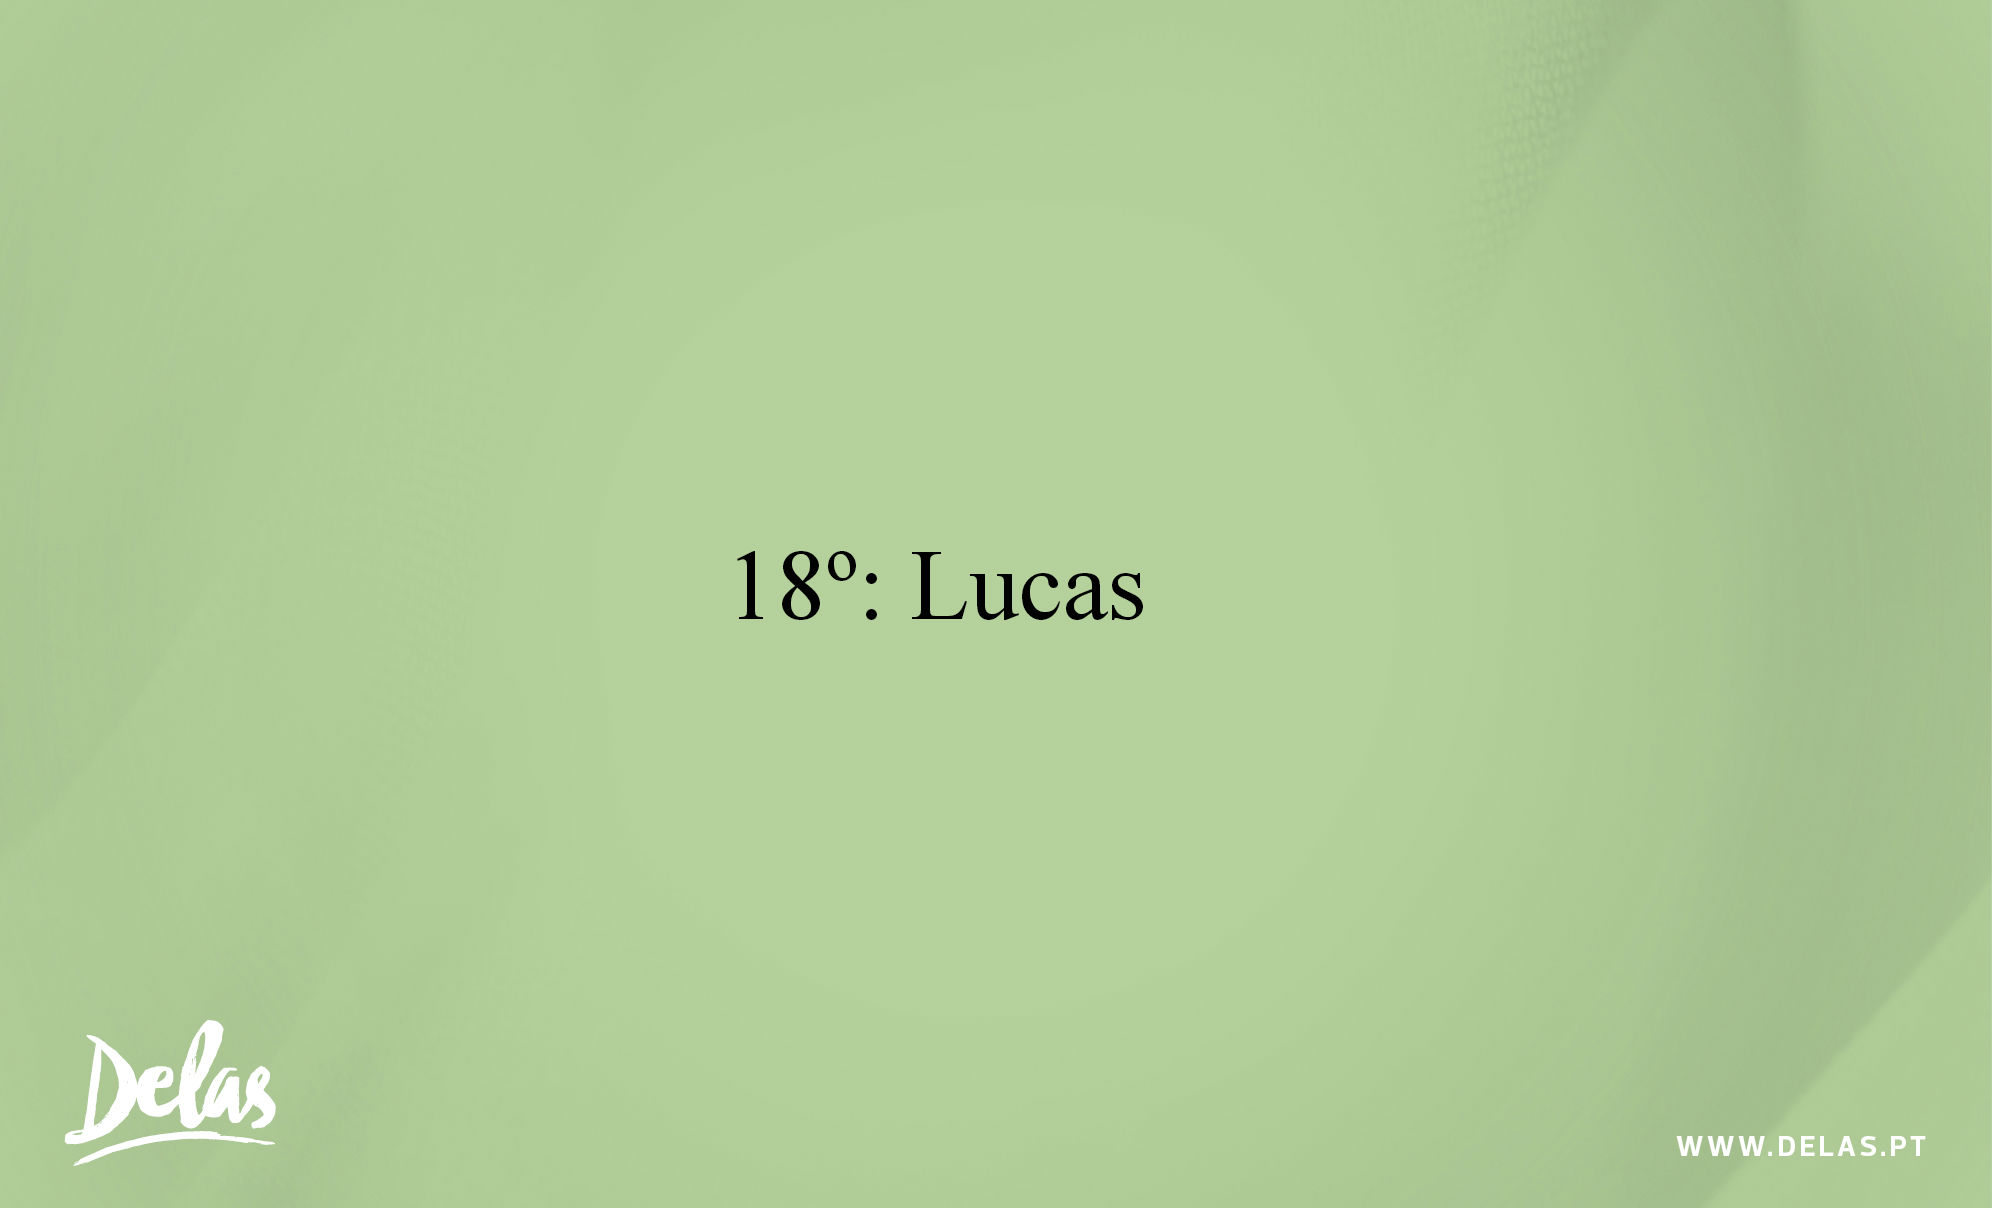 18 Lucas